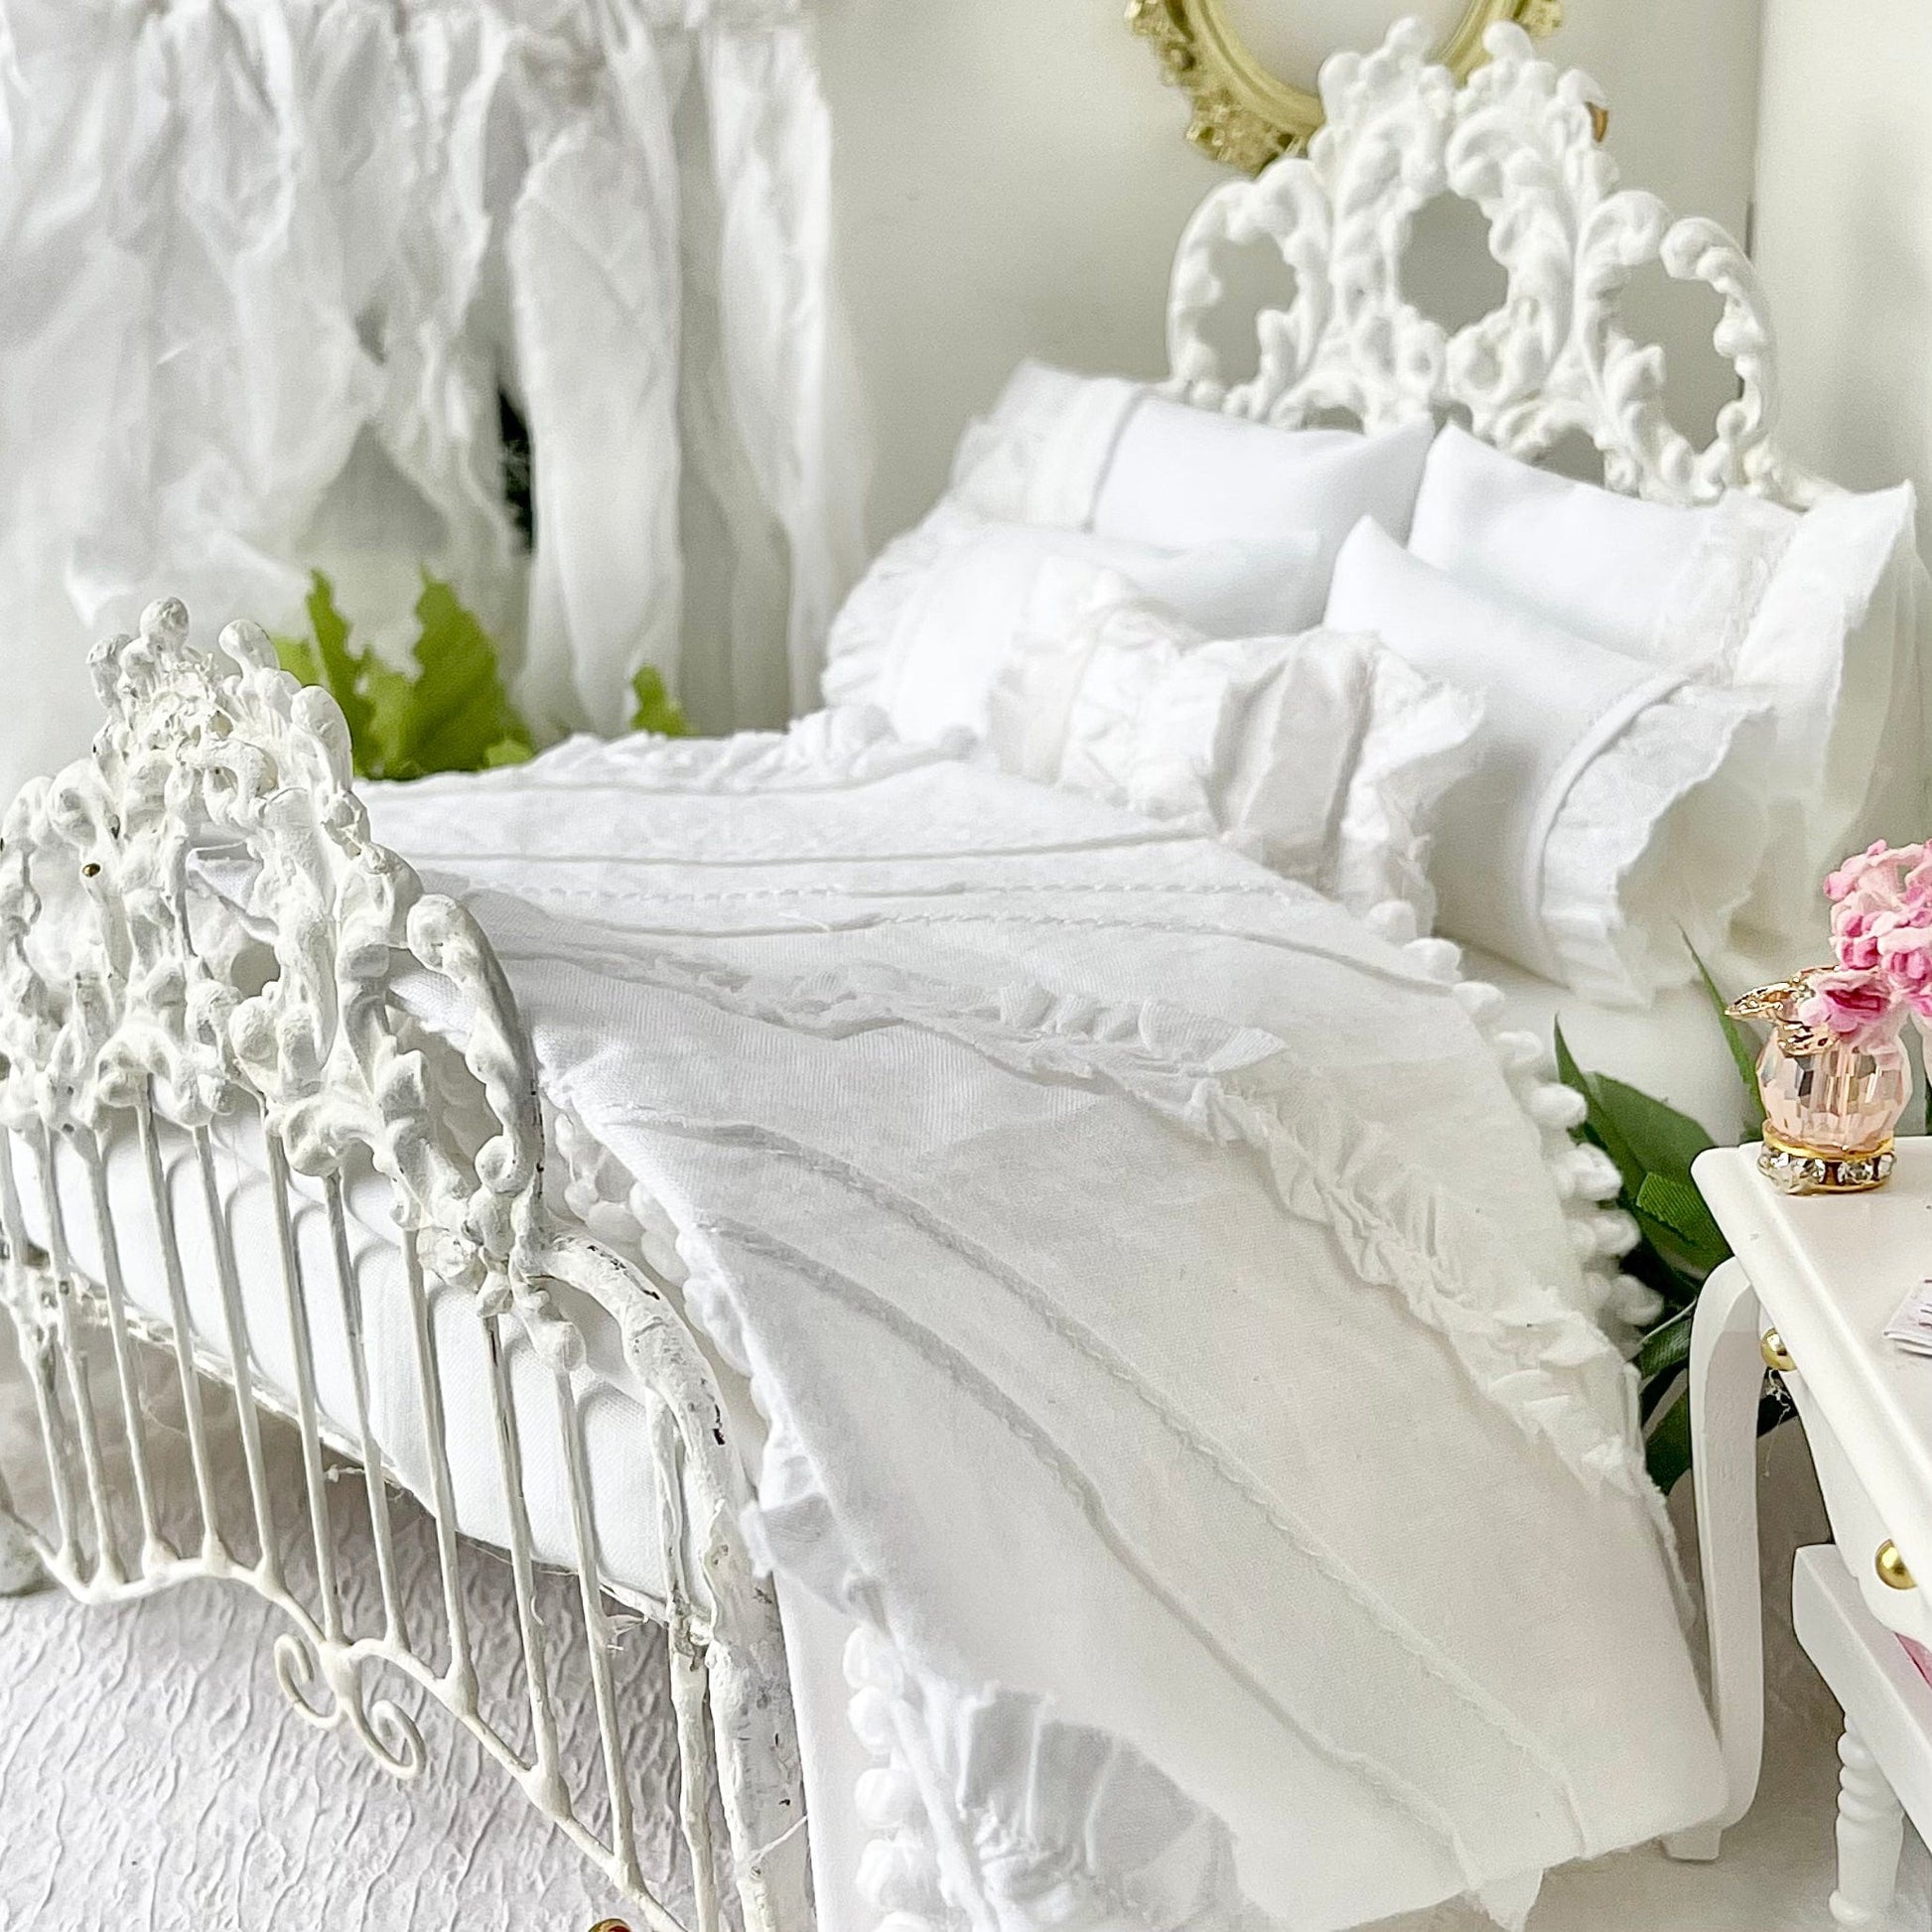 Chantallena White Bed Linens Boundless White | Eight Piece White Cotton with White Ruffles and Pintucks Bedding Set | Ciara